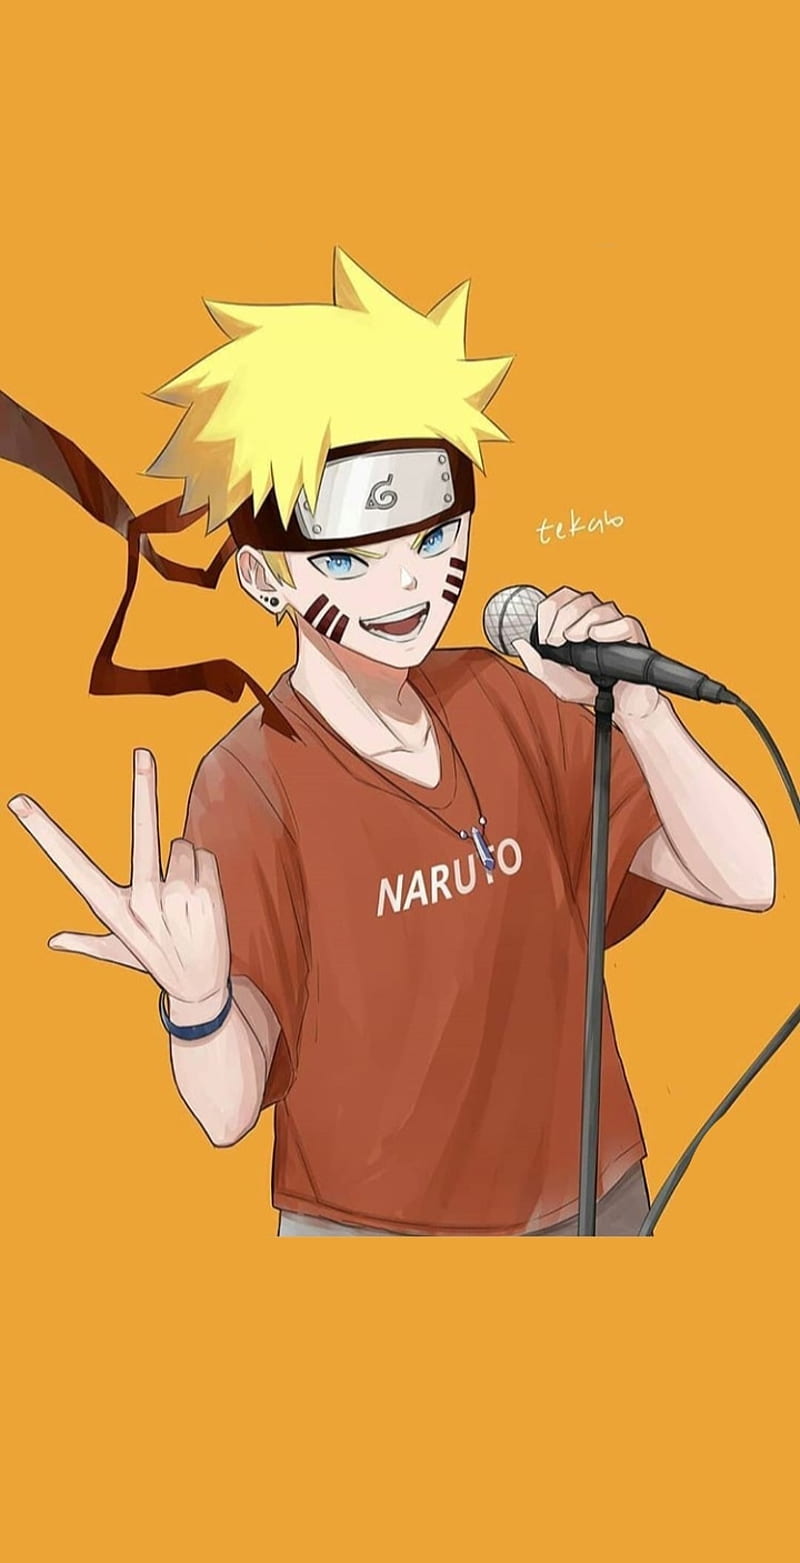 Naruto là một cái tên đình đám không chỉ ở Nhật Bản mà trên toàn thế giới. Nếu bạn là fan hâm mộ của Naruto, chắc chắn bạn sẽ yêu thích những bức ảnh chất lượng HD được chỉnh sửa kỹ lưỡng với những hình ảnh độc đáo và đẹp mắt. Cùng chúng tôi khám phá bộ sưu tập hình nền Naruto HD đầy đủ các nhân vật yêu thích của bạn.